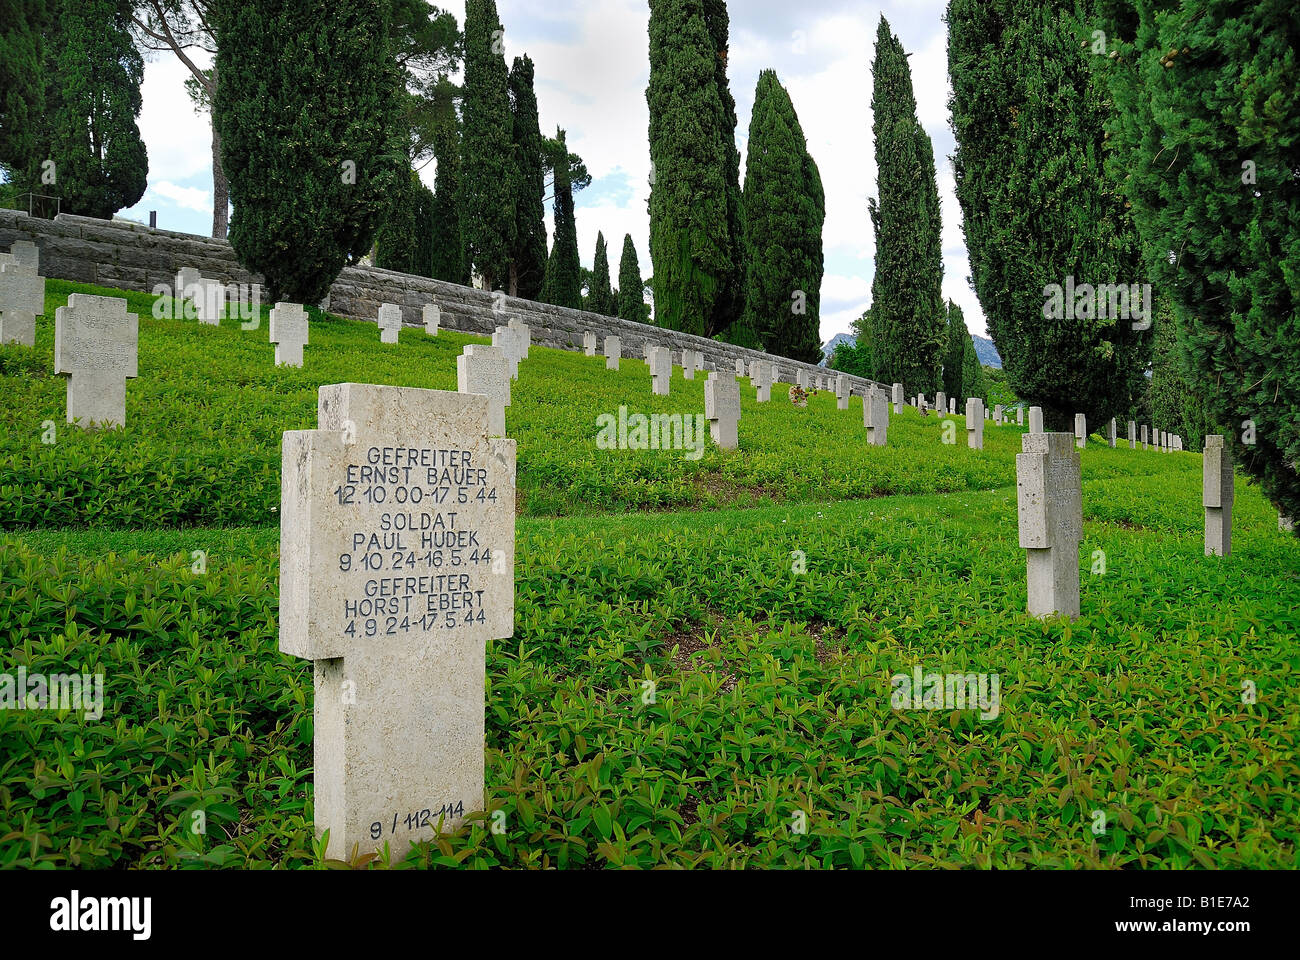 Cimetière de guerre allemand de Cassino.Deuxième Guerre mondiale.dans le cimetière reposent 20057 soldats allemands Banque D'Images